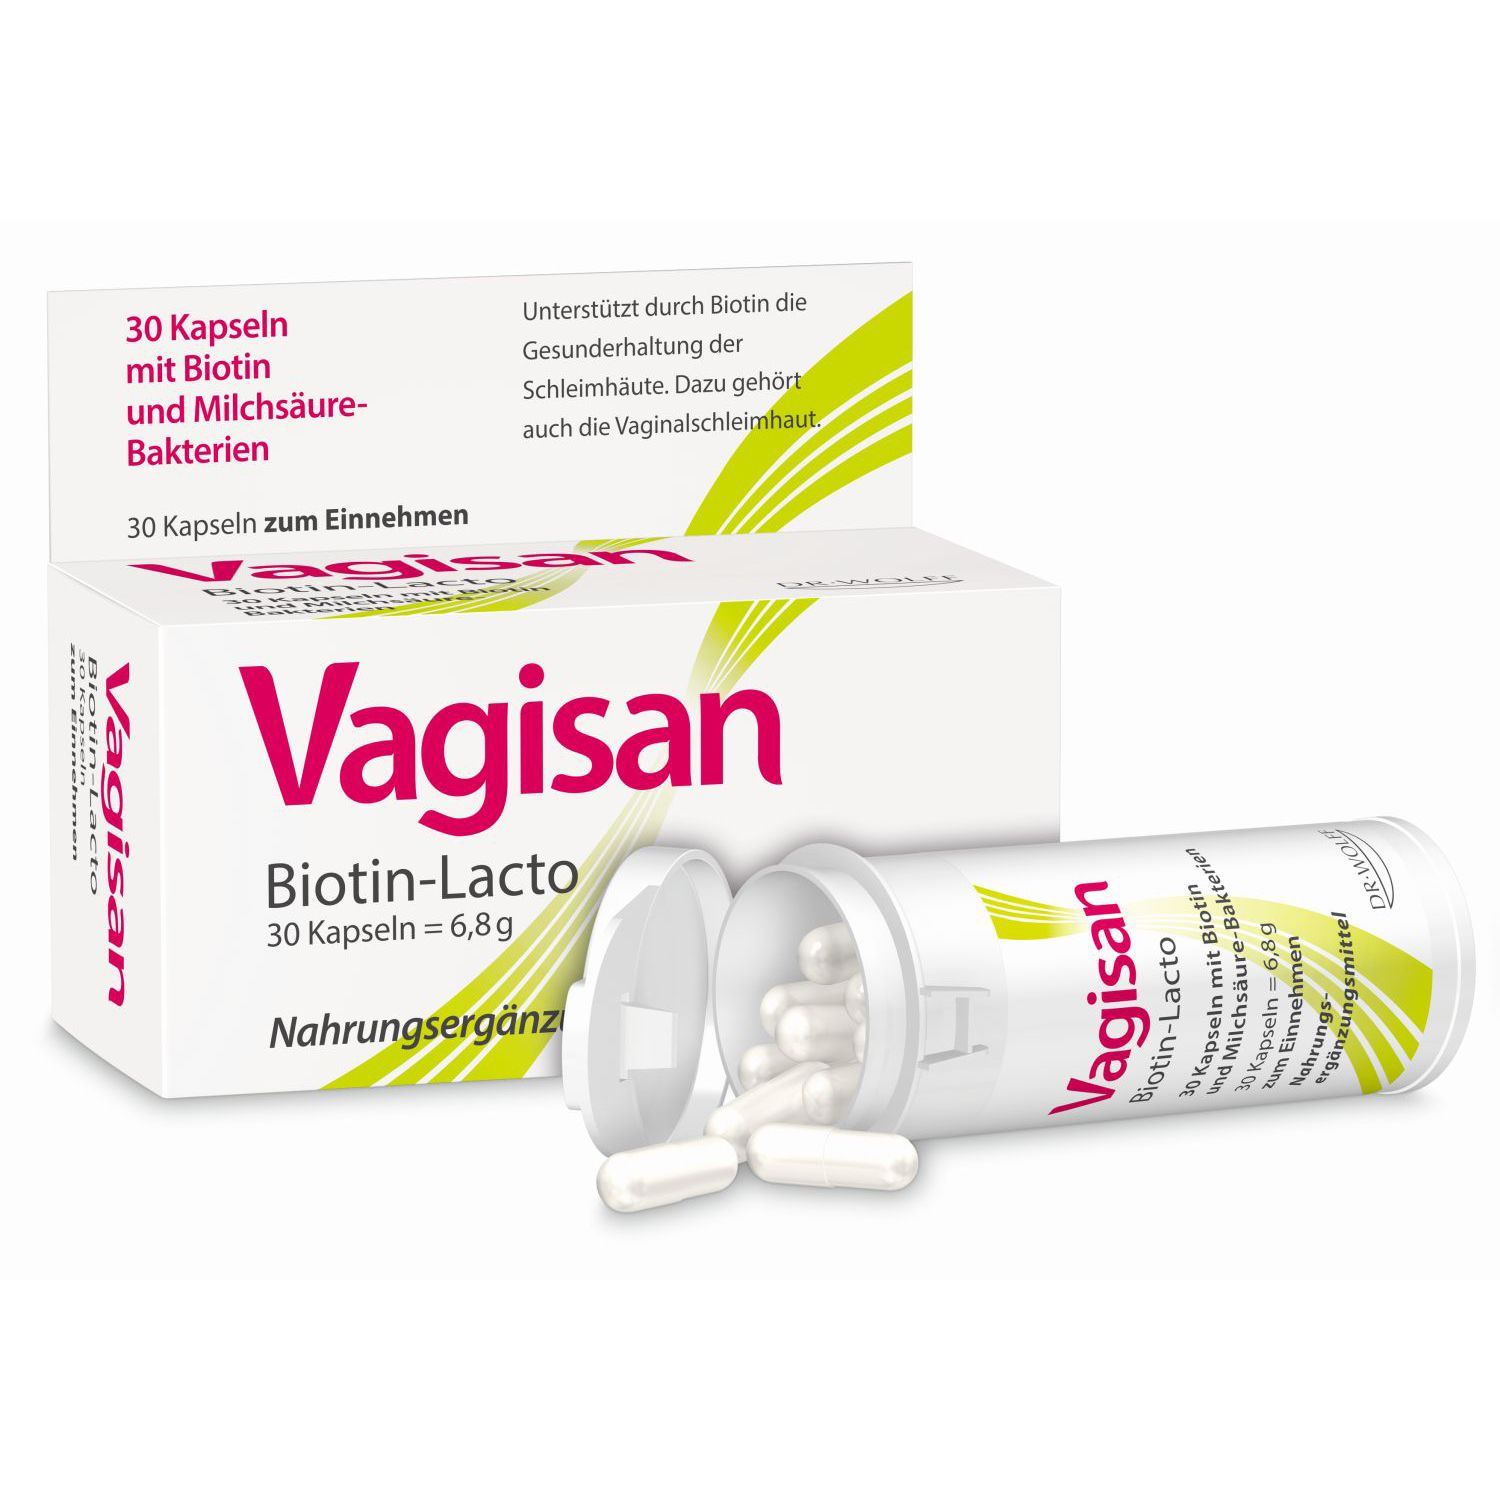 Image of Vagisan Biotin-Lacto